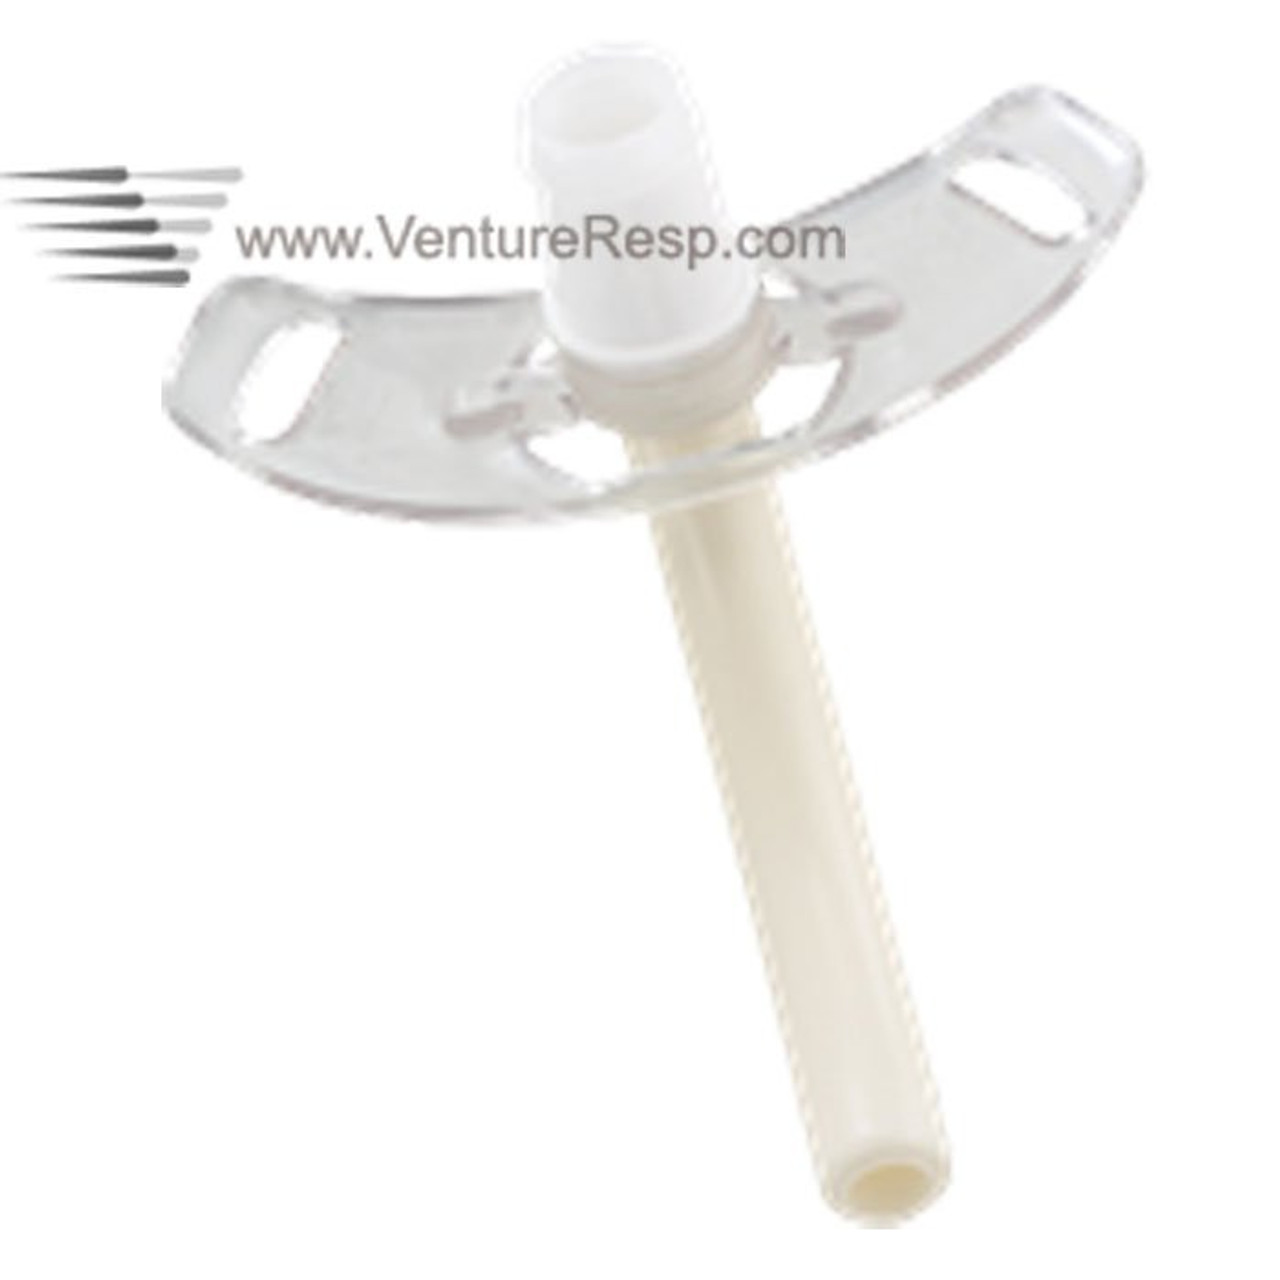 Description of operation for grommet /ventilation tube insertion — Mr  Christopher Pepper FRCS